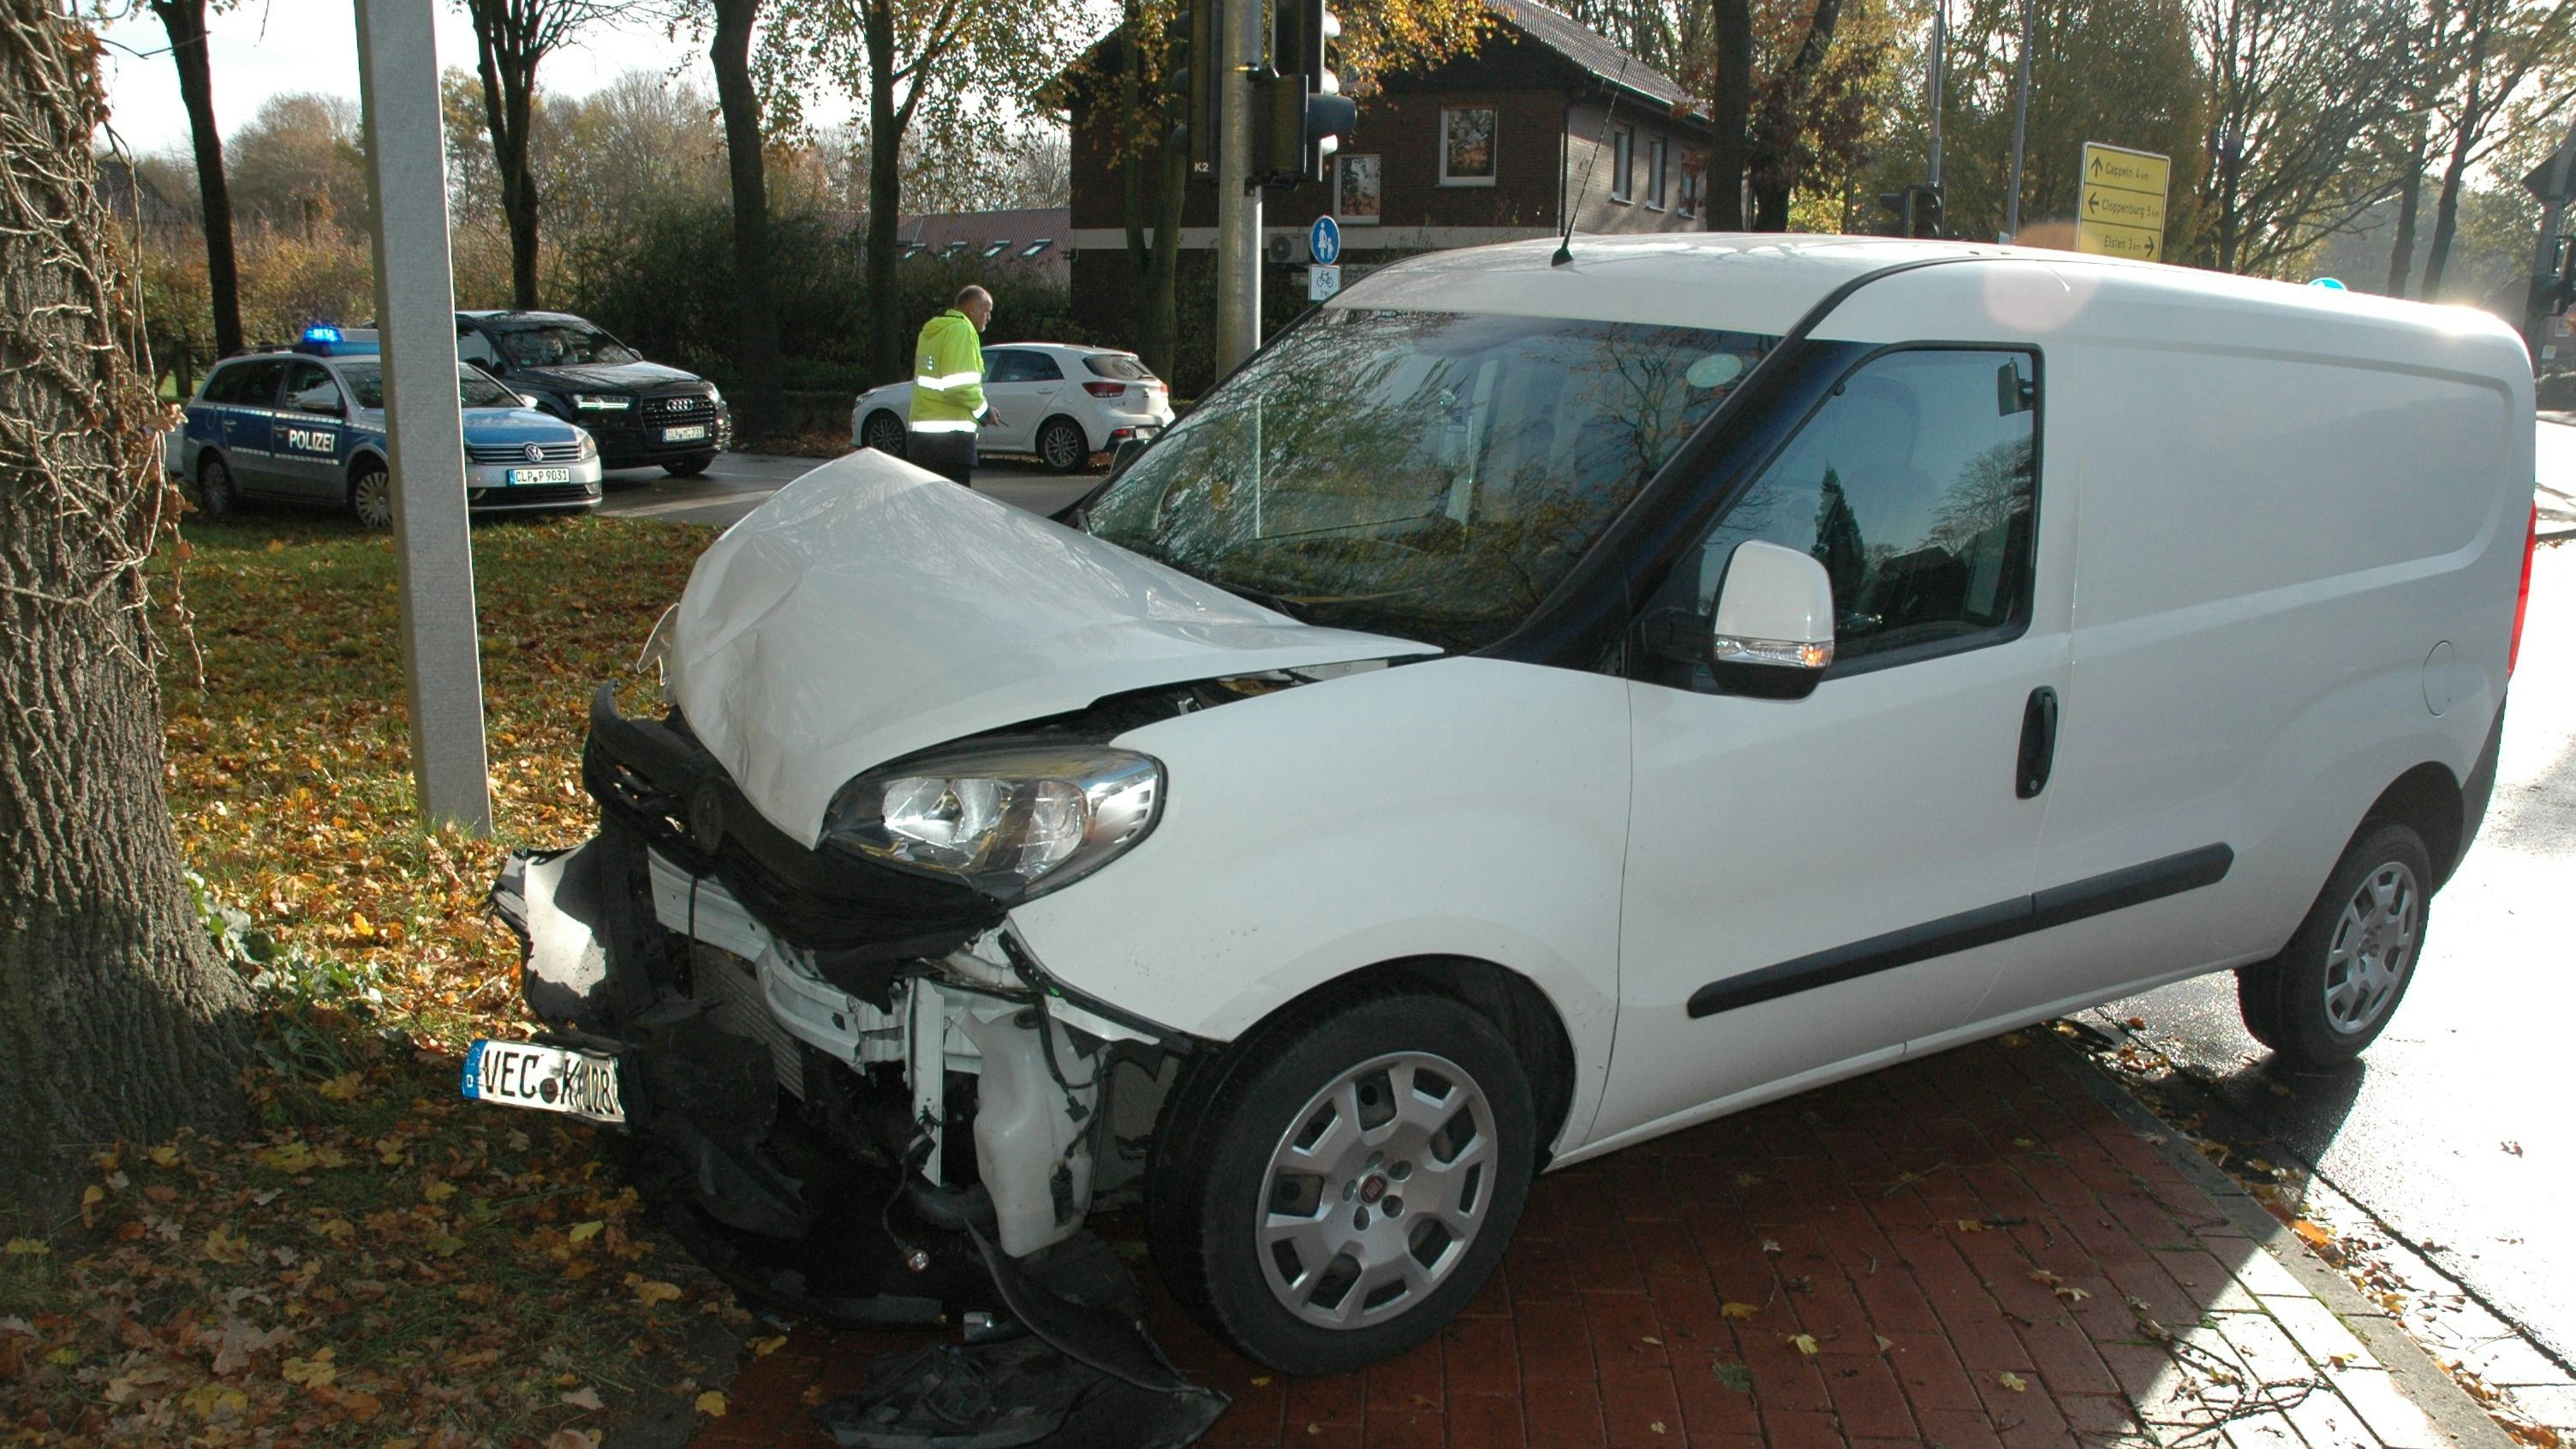 Frontal gegen einen Hyundai: Der Fiat des Lohners wurde bei dem Zusammenstoß stark beschädigt. Foto: Kaiser